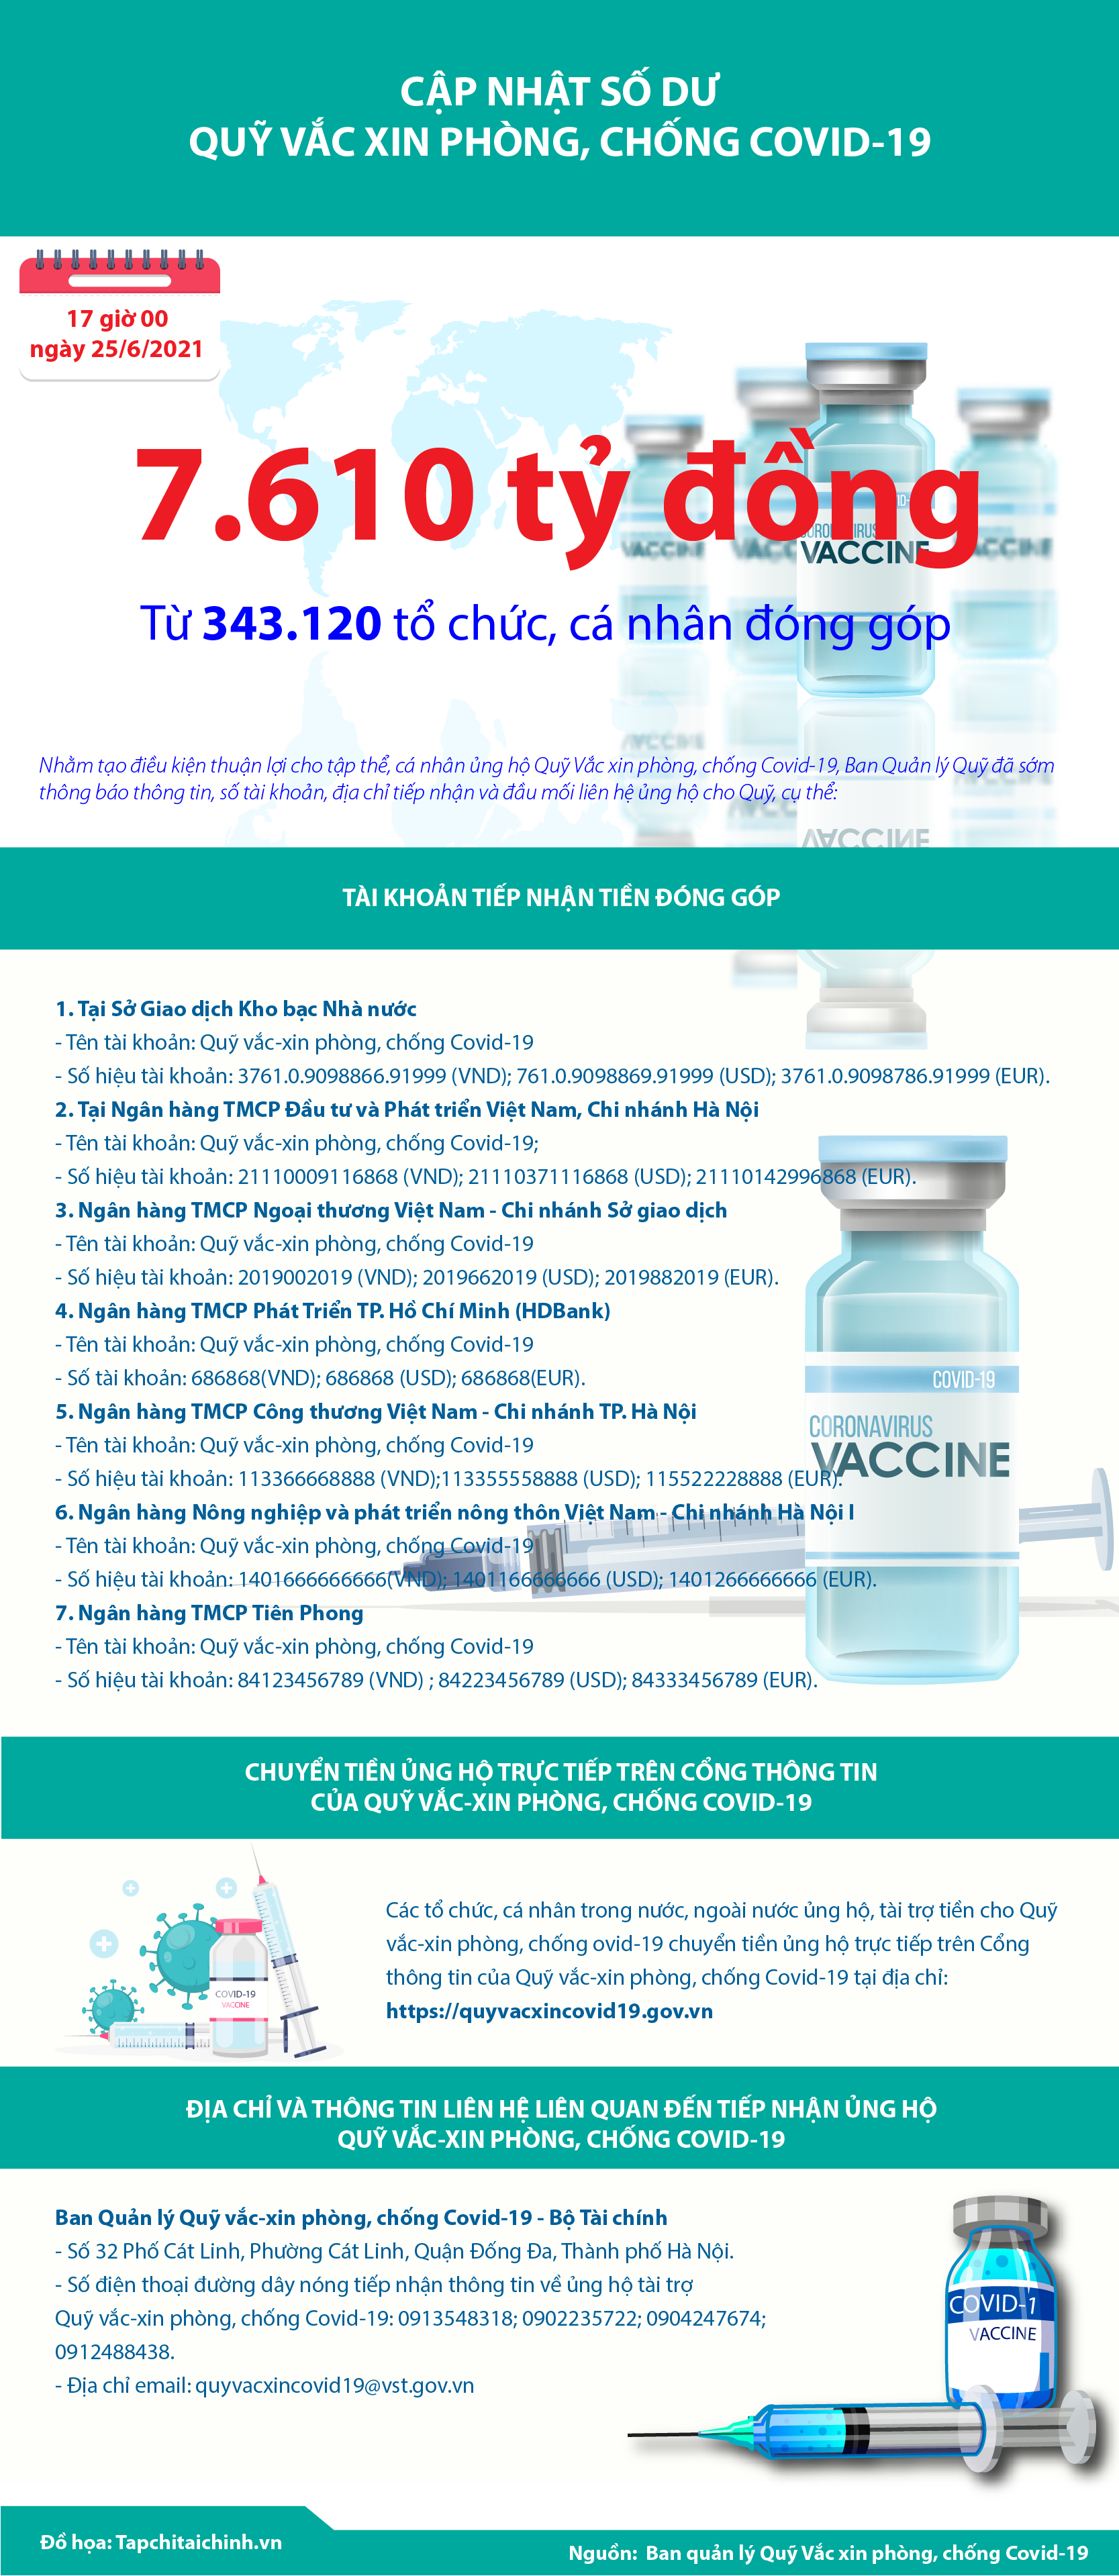 [Infographics] Quỹ Vắc xin phòng, chống Covid-19 đã tiếp nhận ủng hộ 7.610 tỷ đồng - Ảnh 1